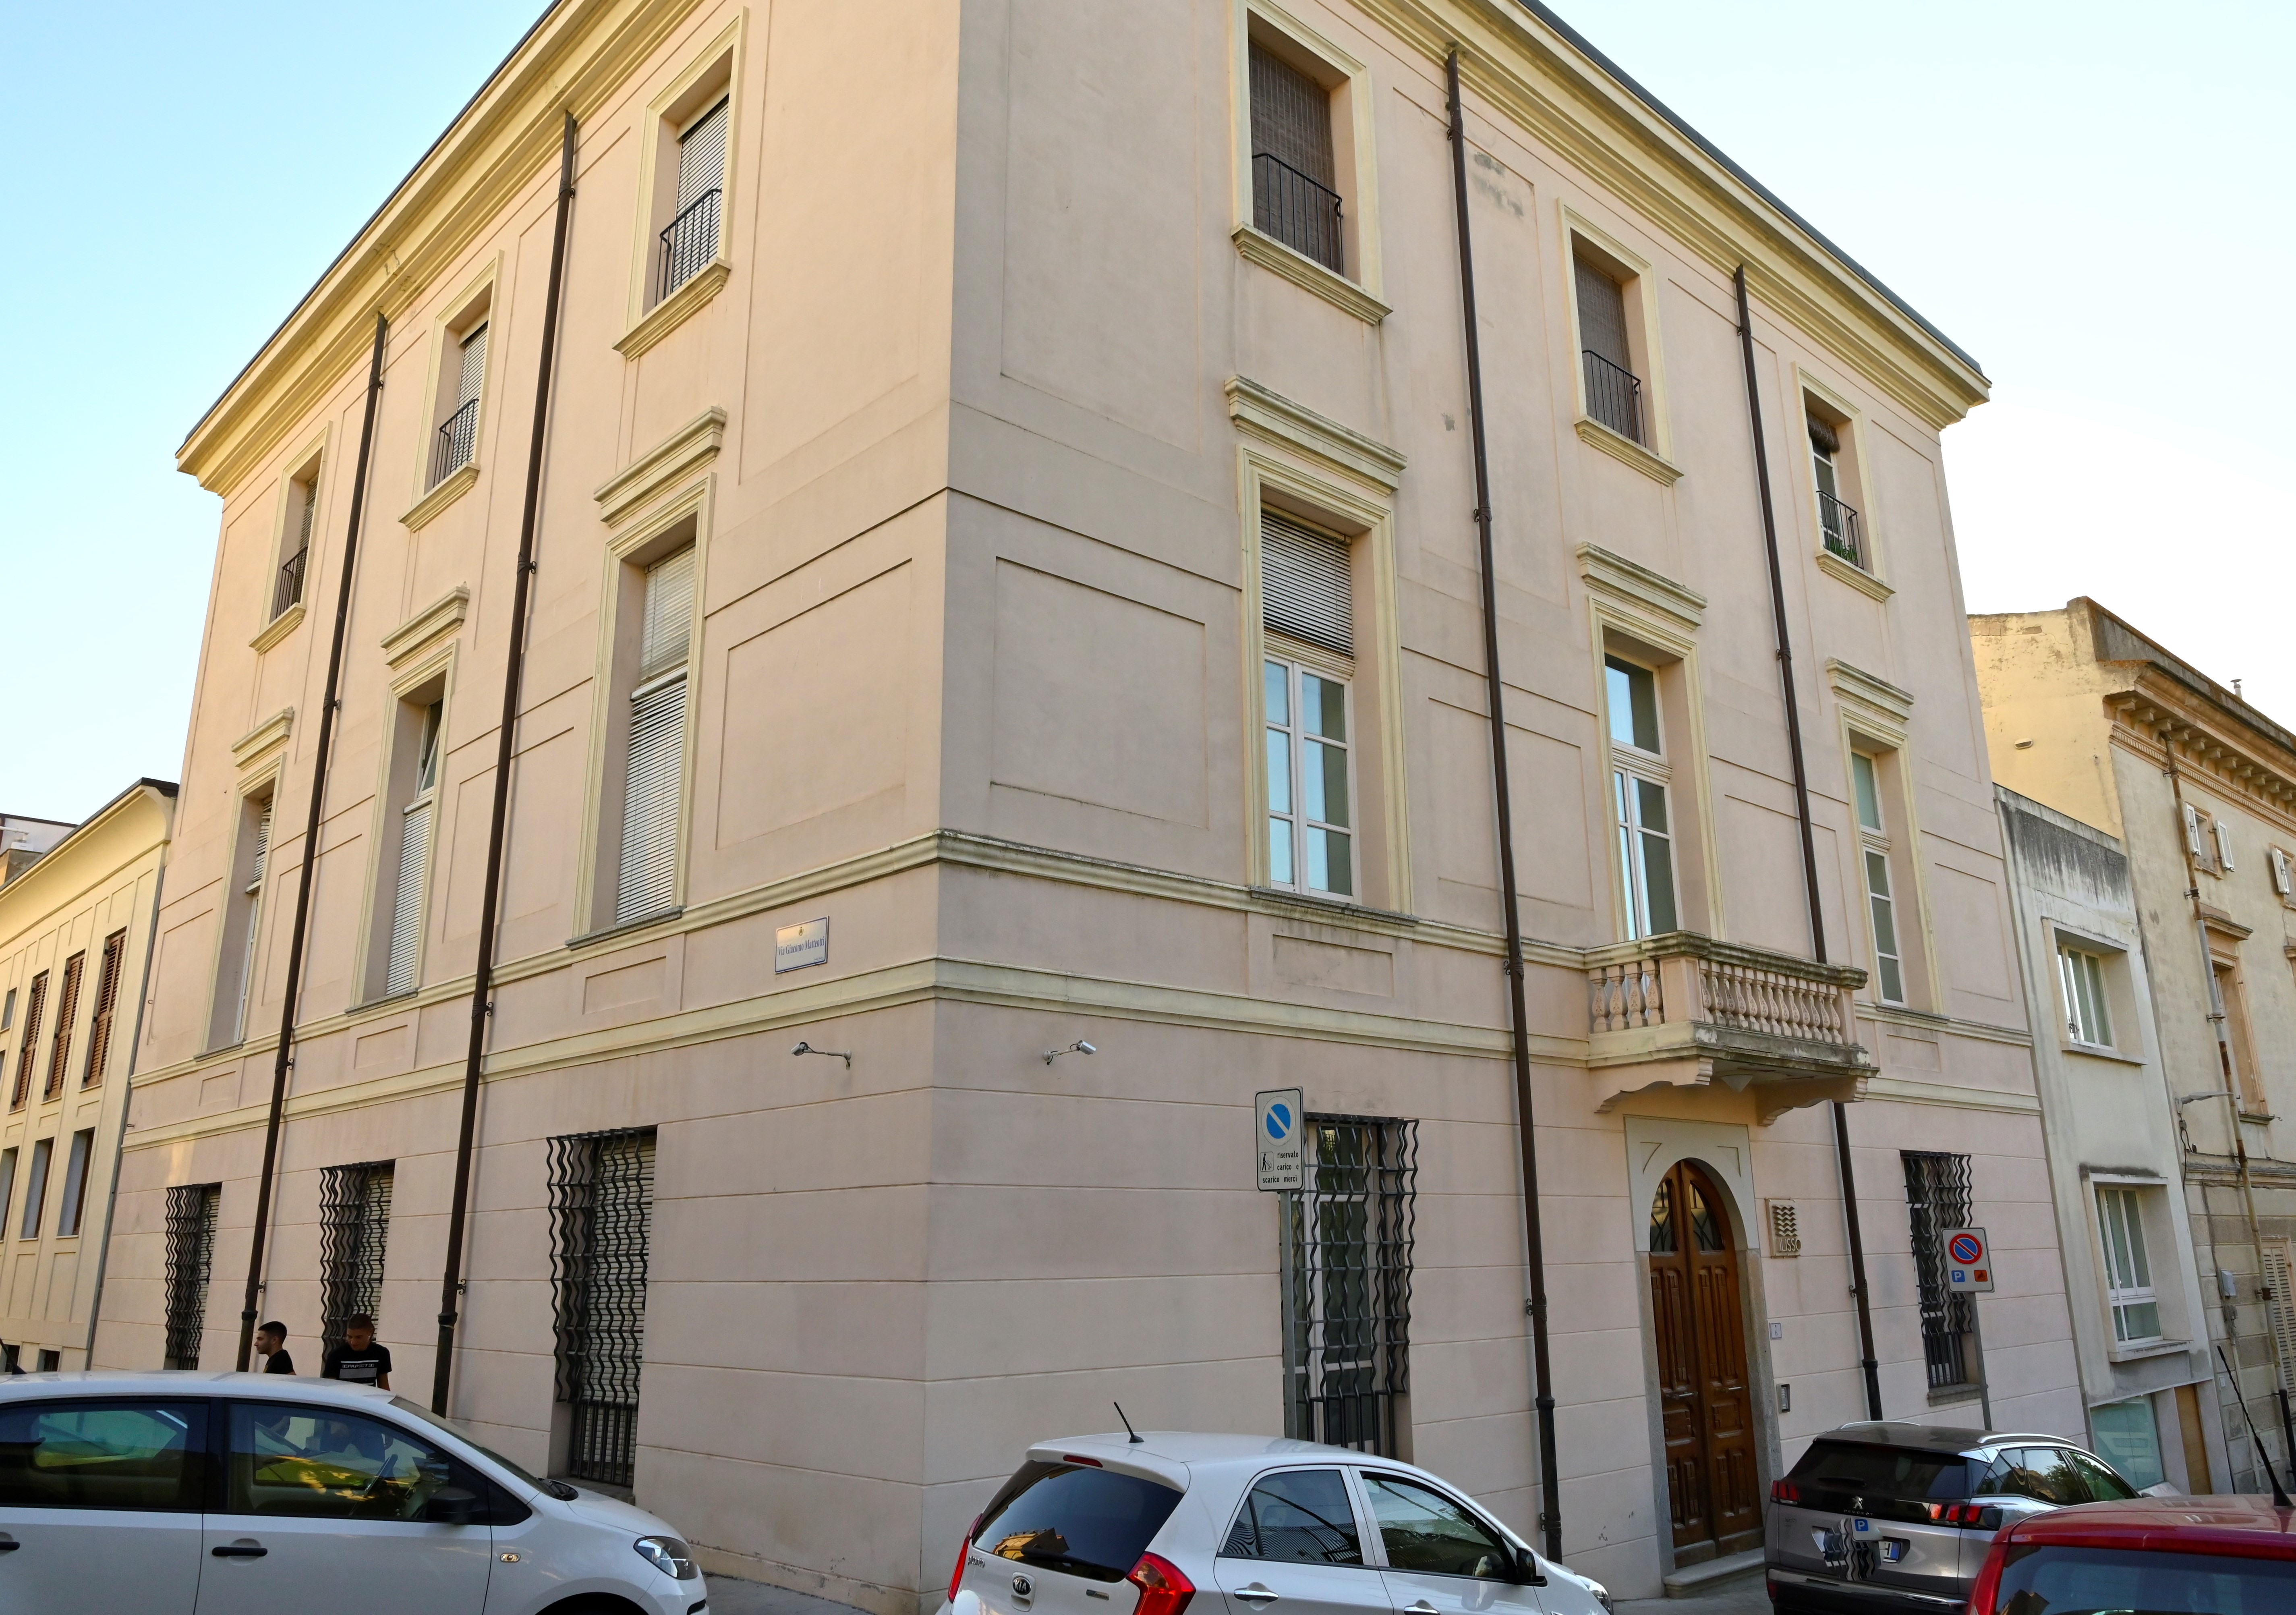 Palazzo Casa Editrice Ilisso (palazzo, privato) - Nuoro (NU) 